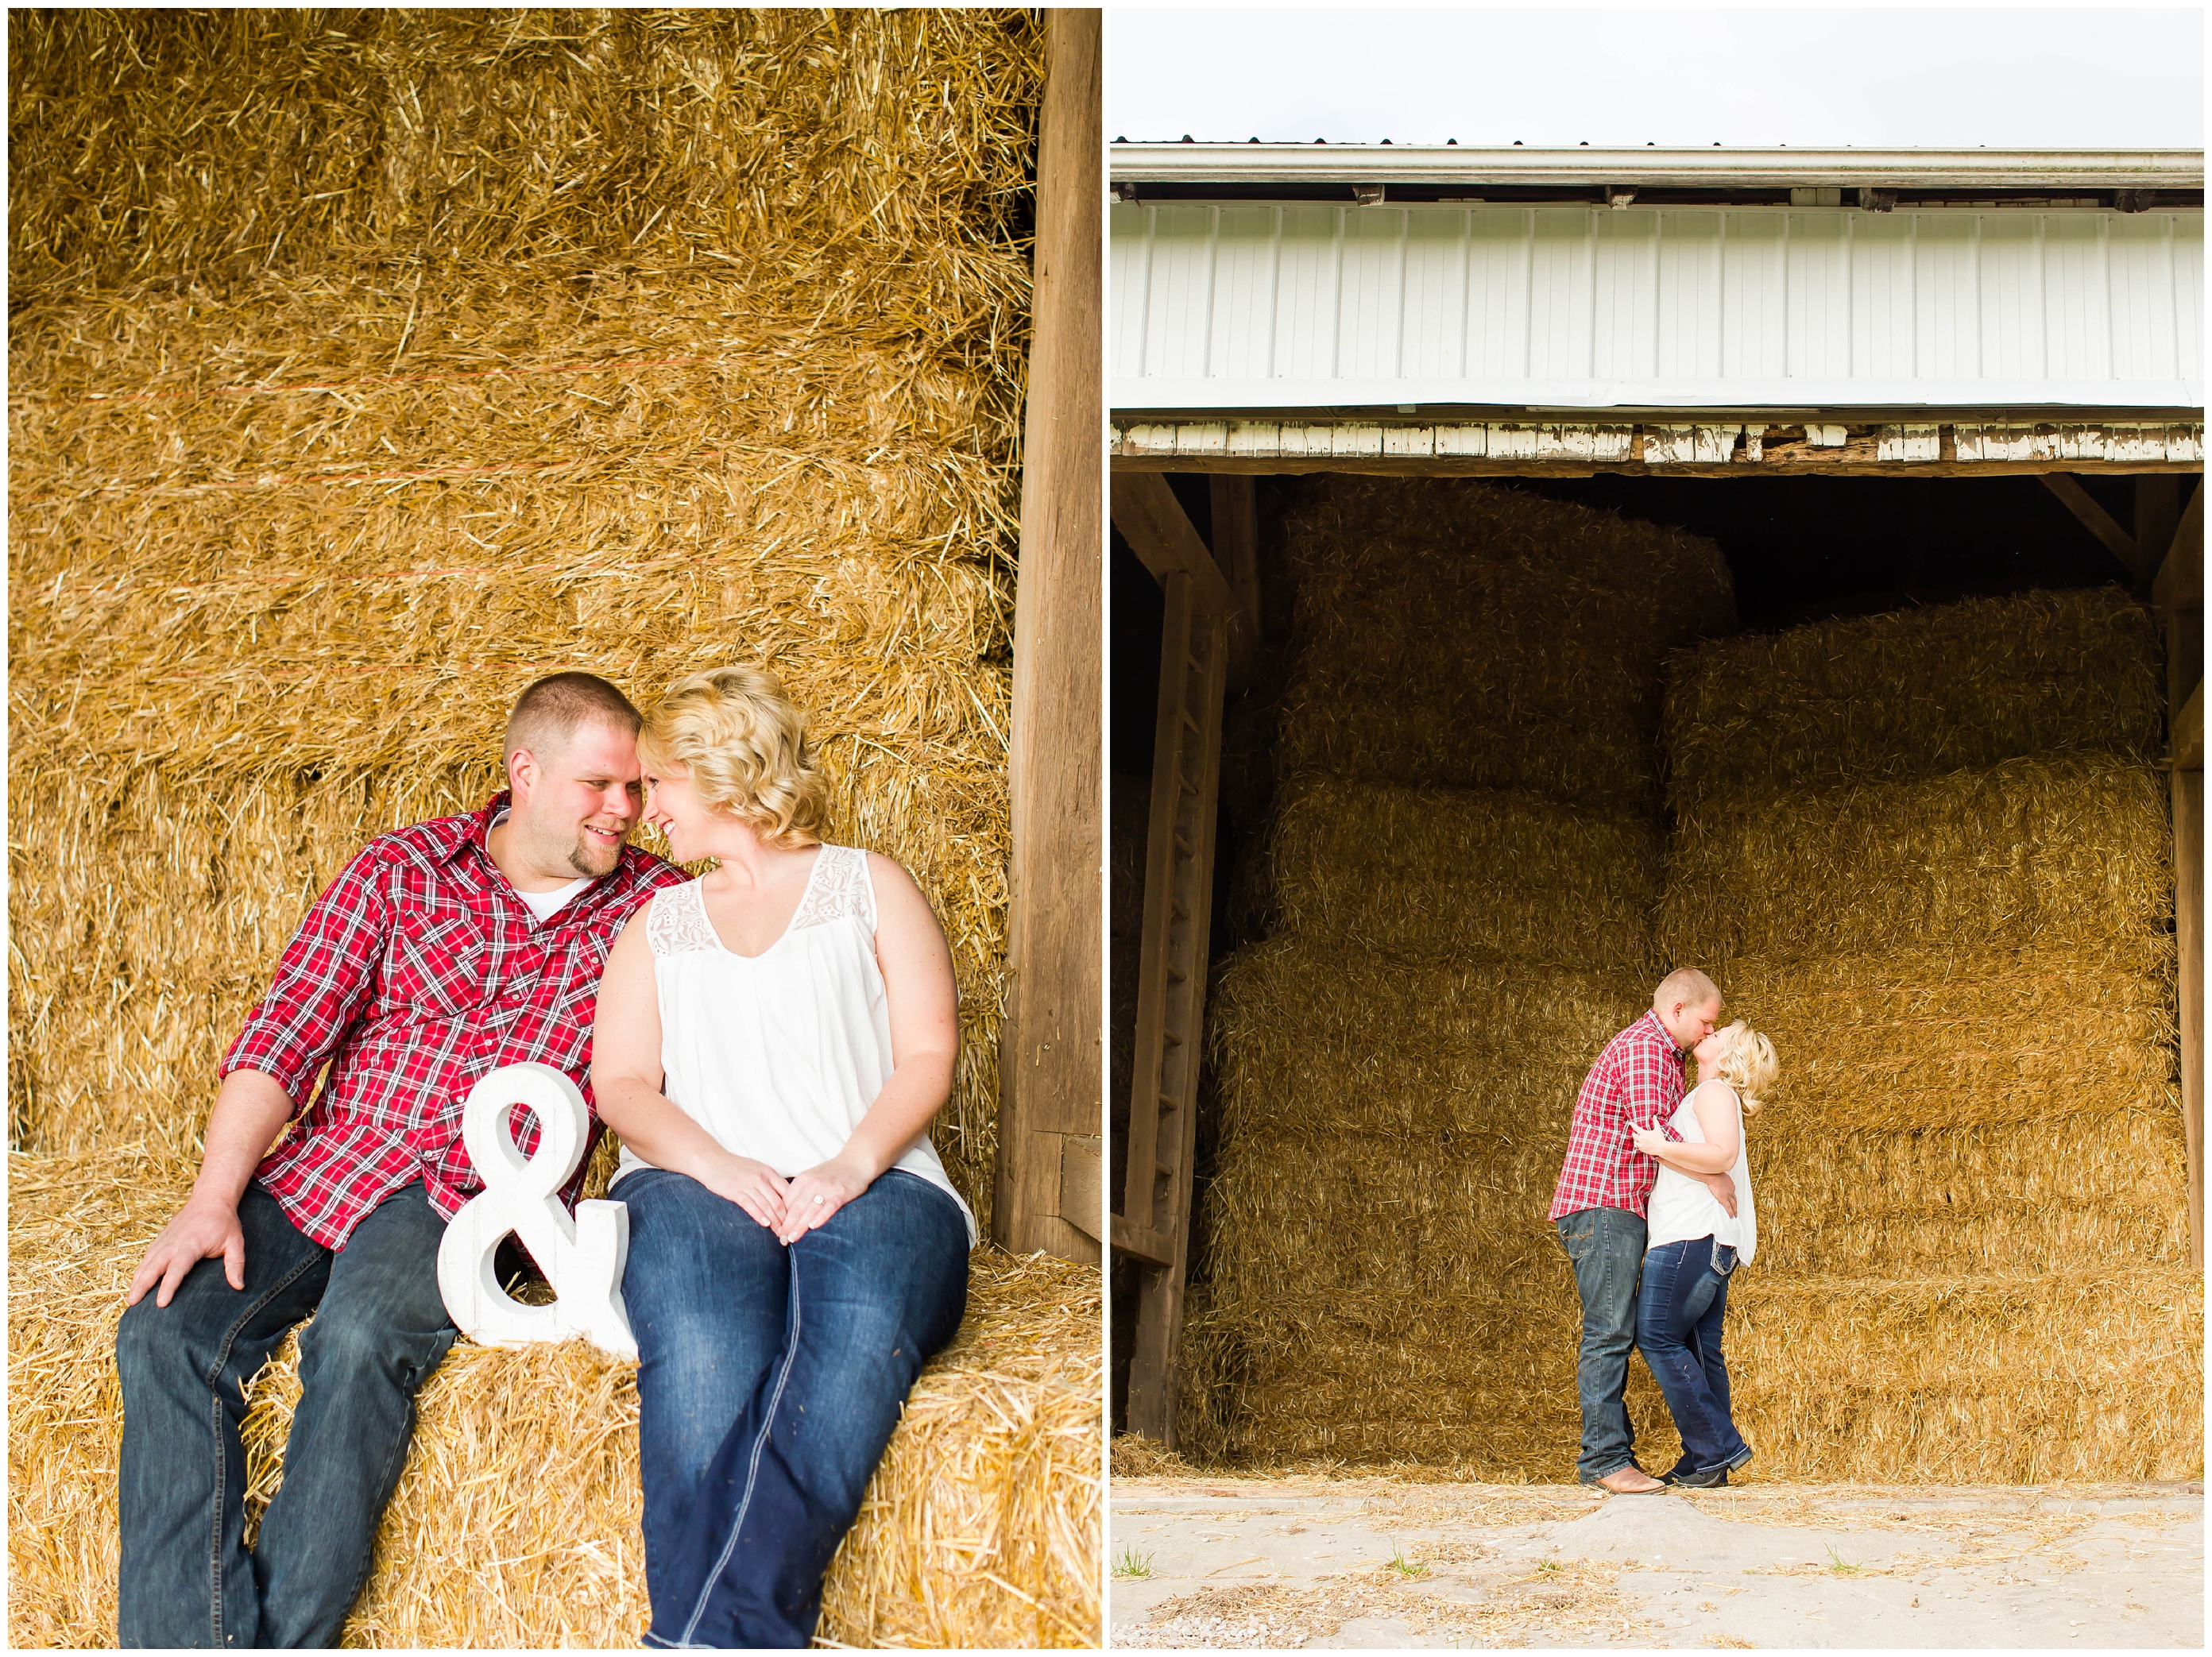 Cleveland Ohio Wedding Photographer,farm engagement photos,loren jackson photography,photographer akron ohio,